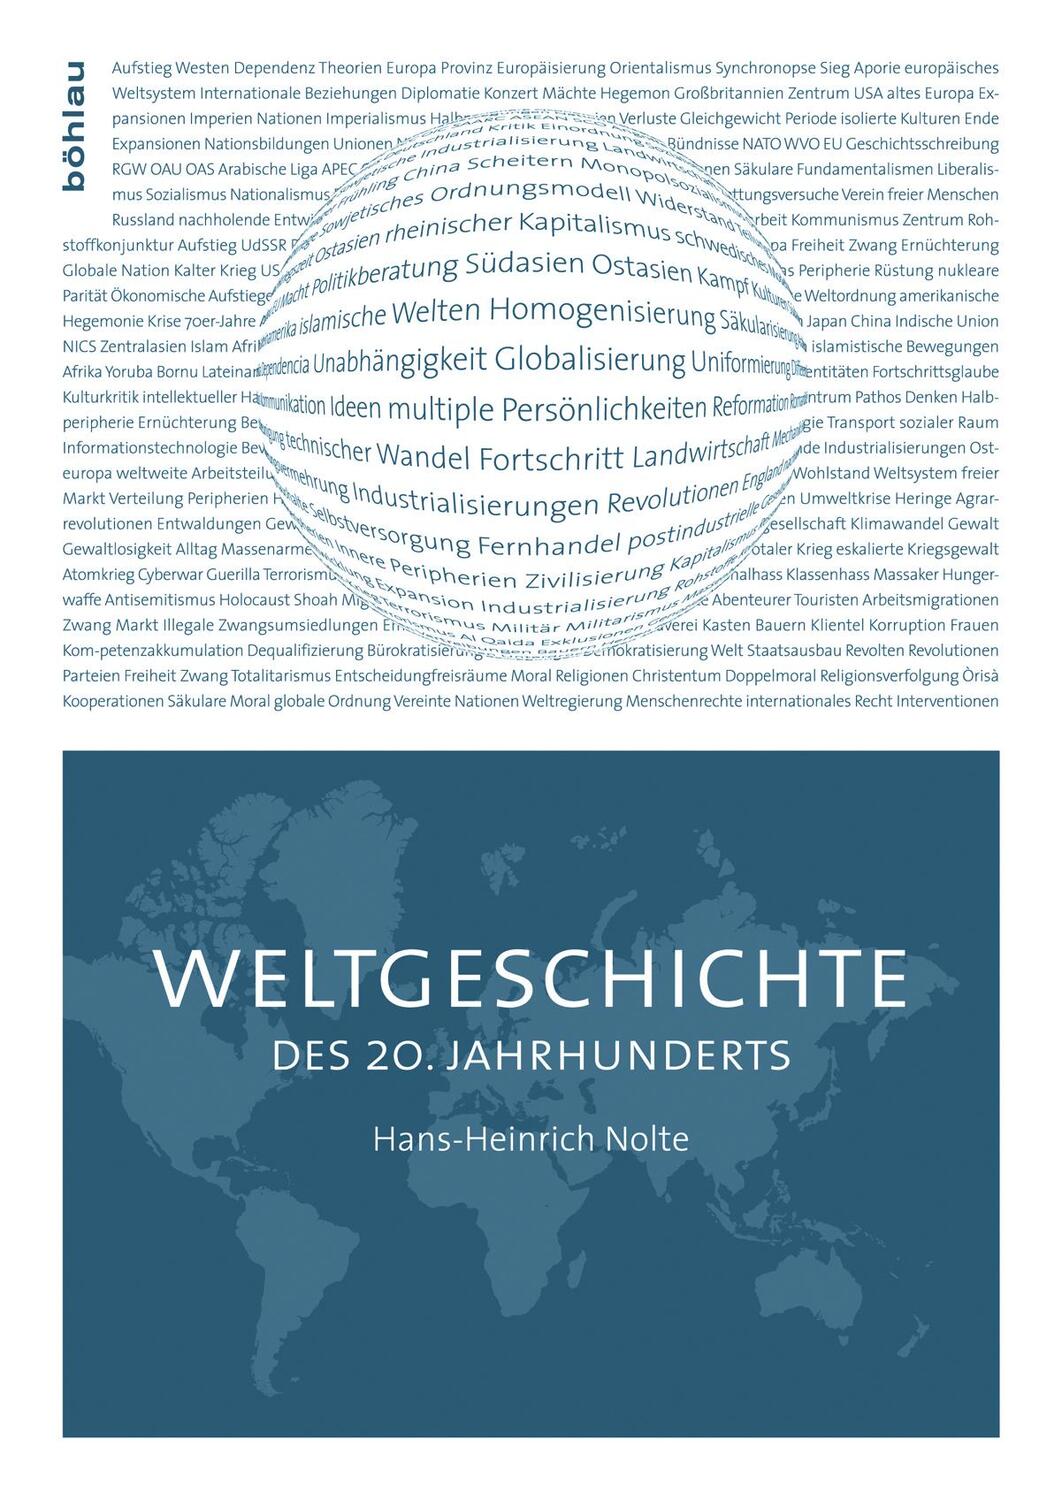 Weltgeschichte des 20. Jahrhunderts - Nolte, Hans-Heinrich